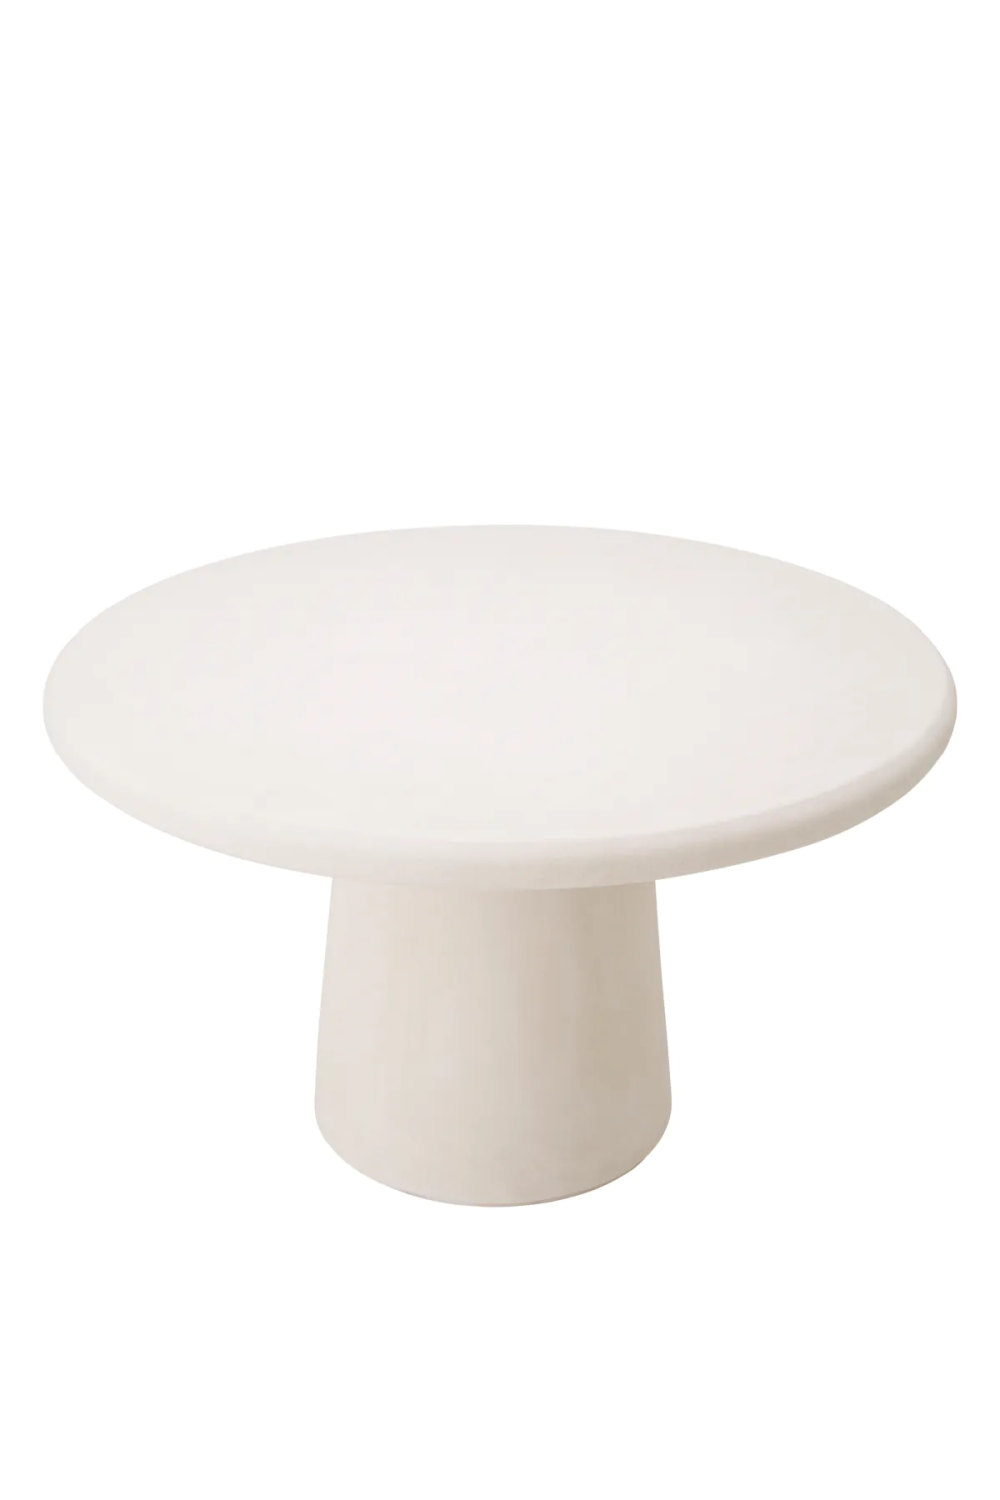 White Round Outdoor Dining Table M | Eichholtz Cleon | Oroa.com